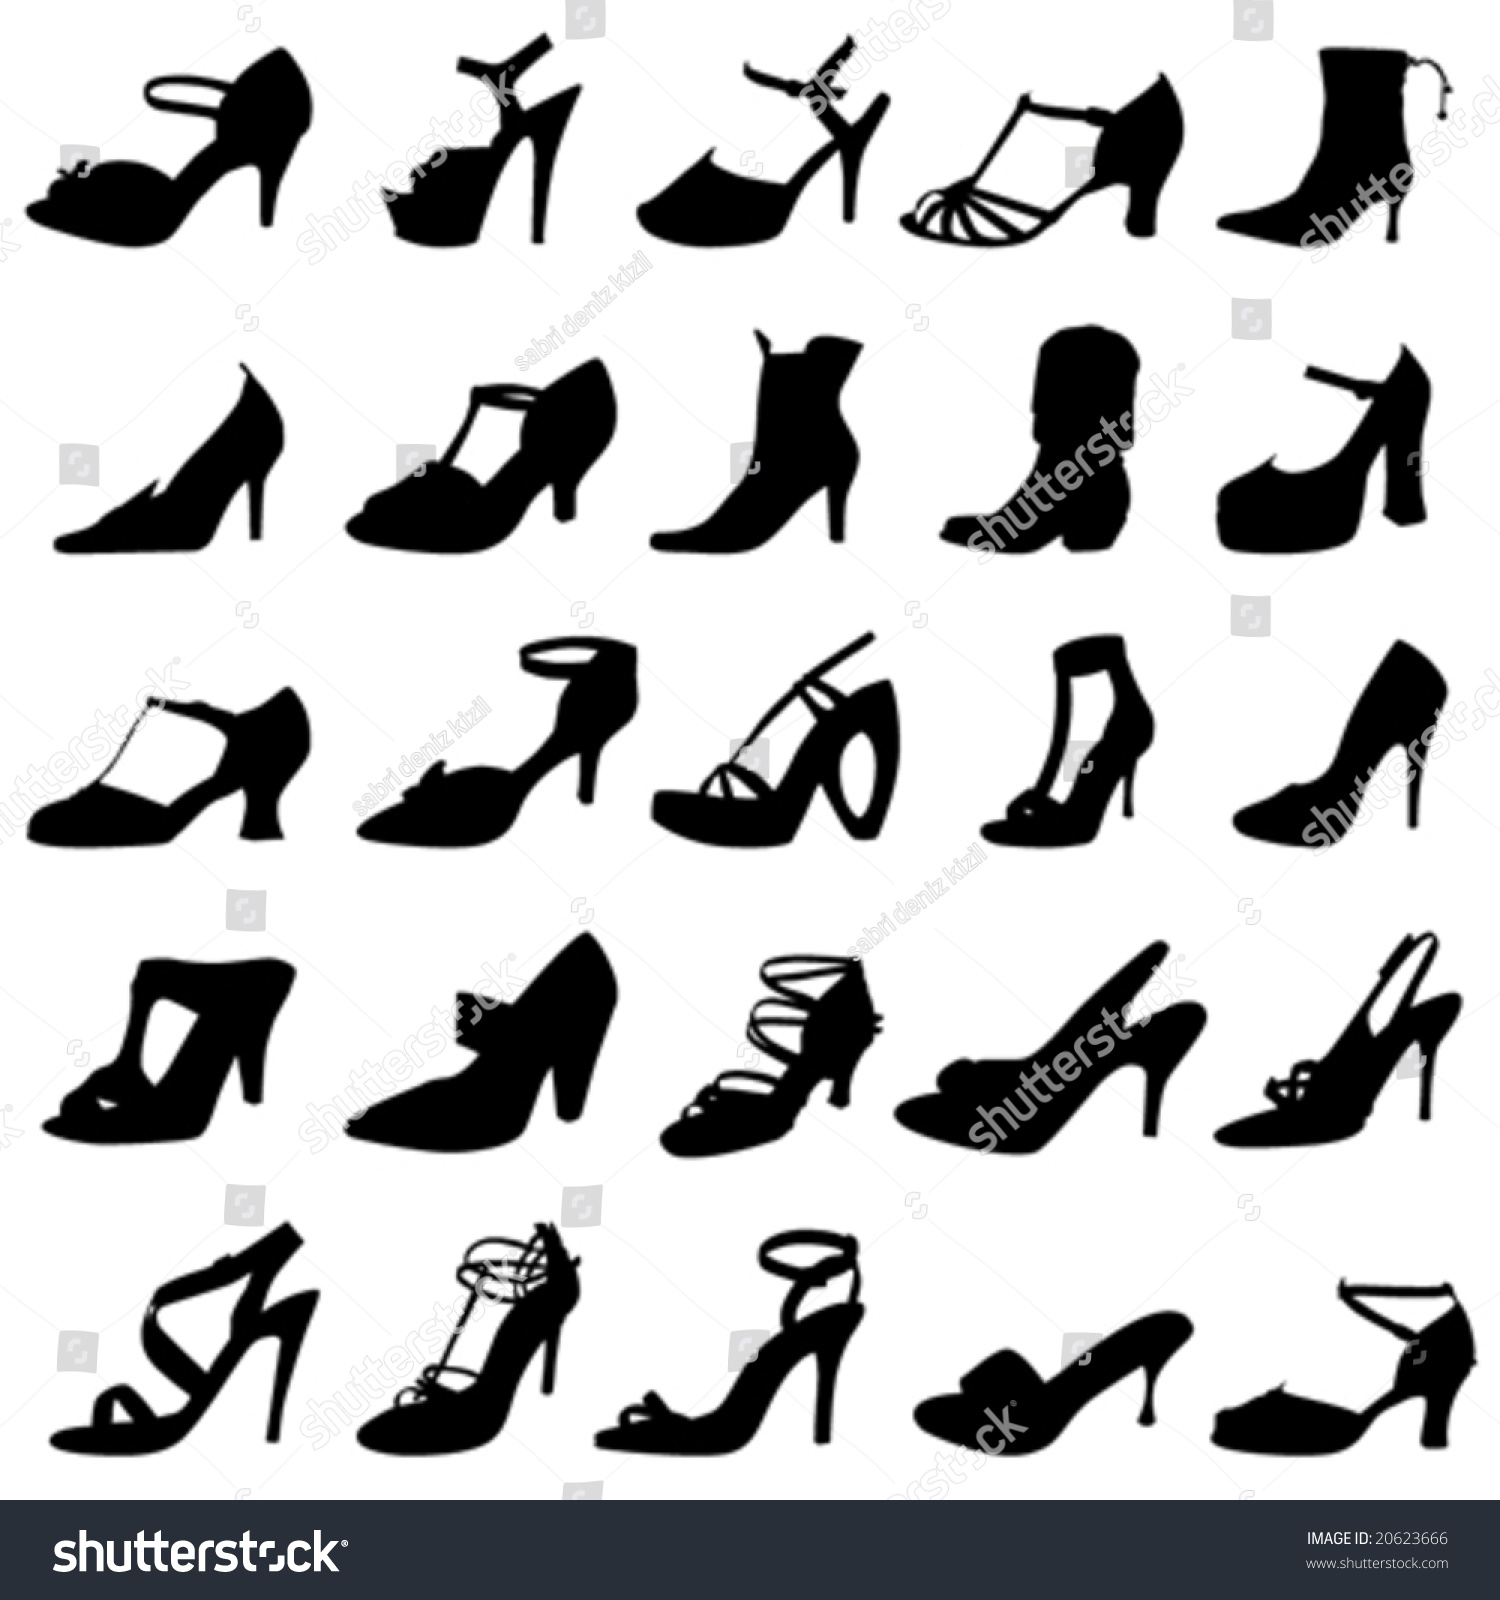 Fashion Women Shoes Vector - 20623666 : Shutterstock